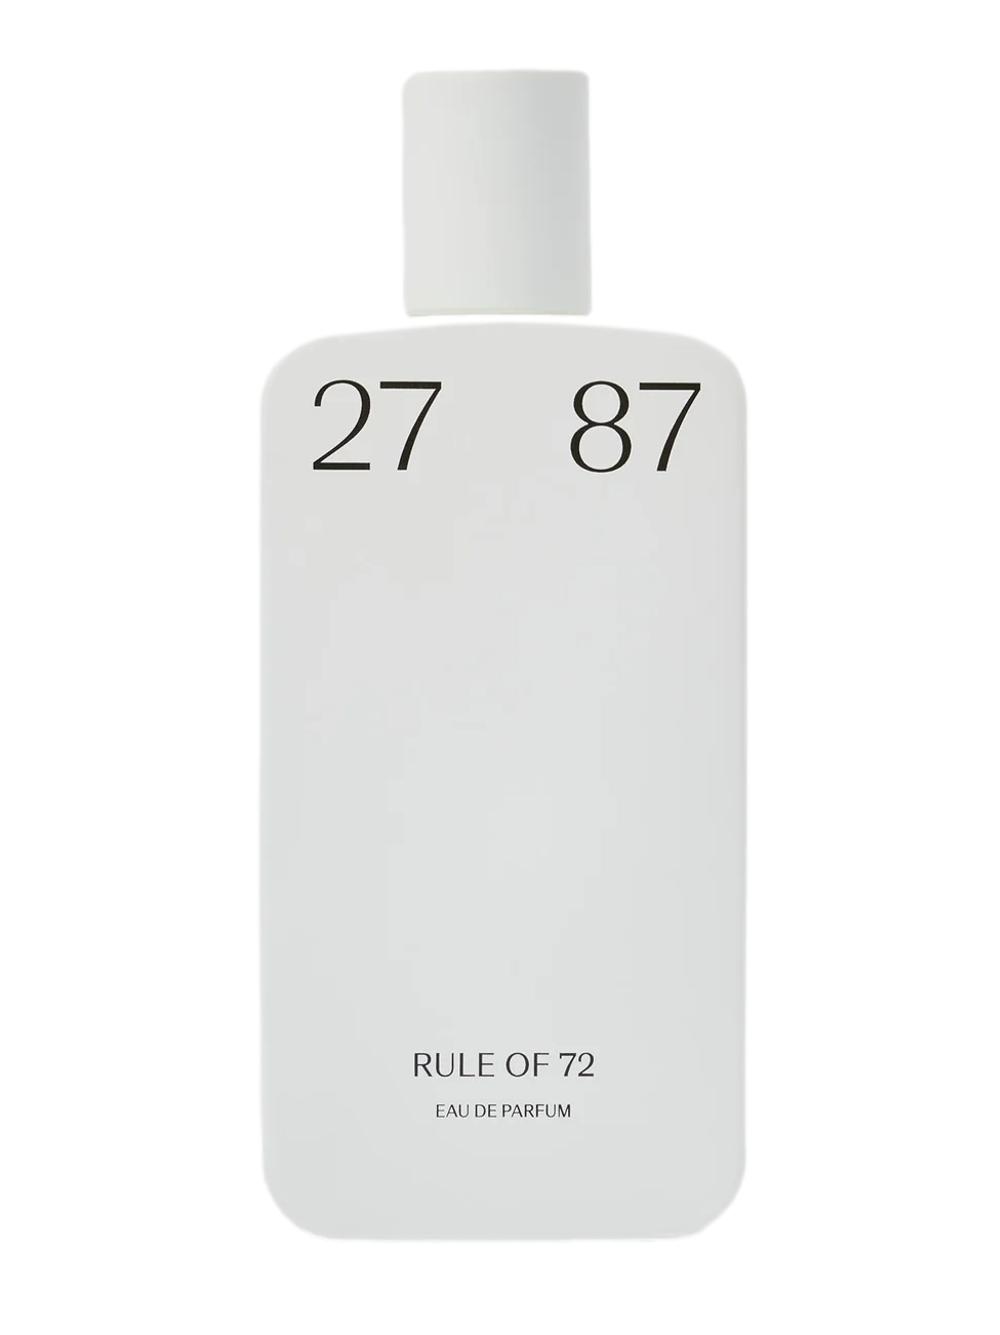 rule of 72, 87 ml EdP